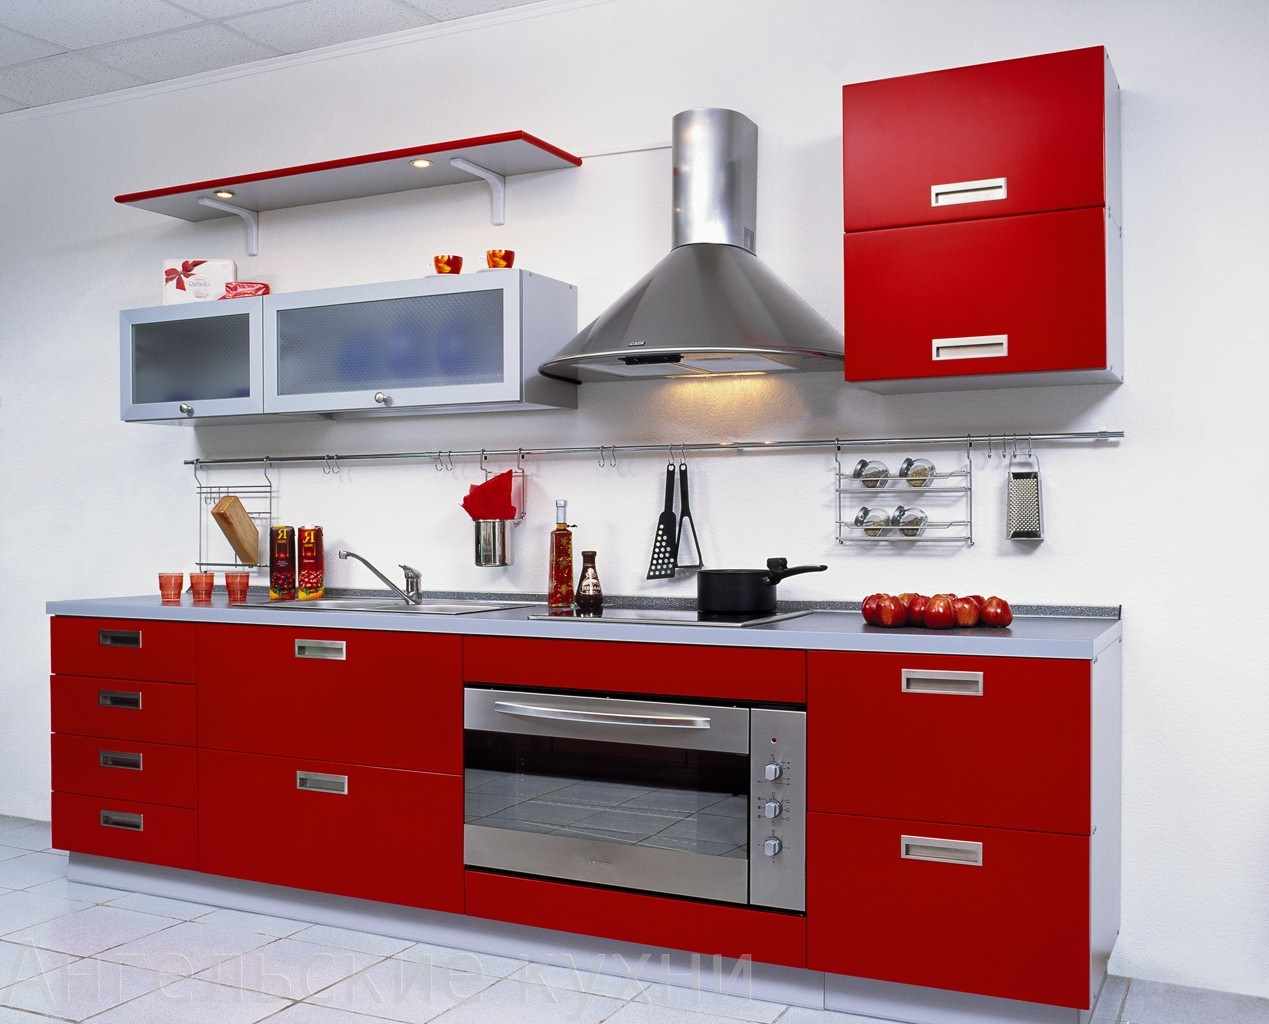 un exemple d'un design inhabituel d'une cuisine rouge